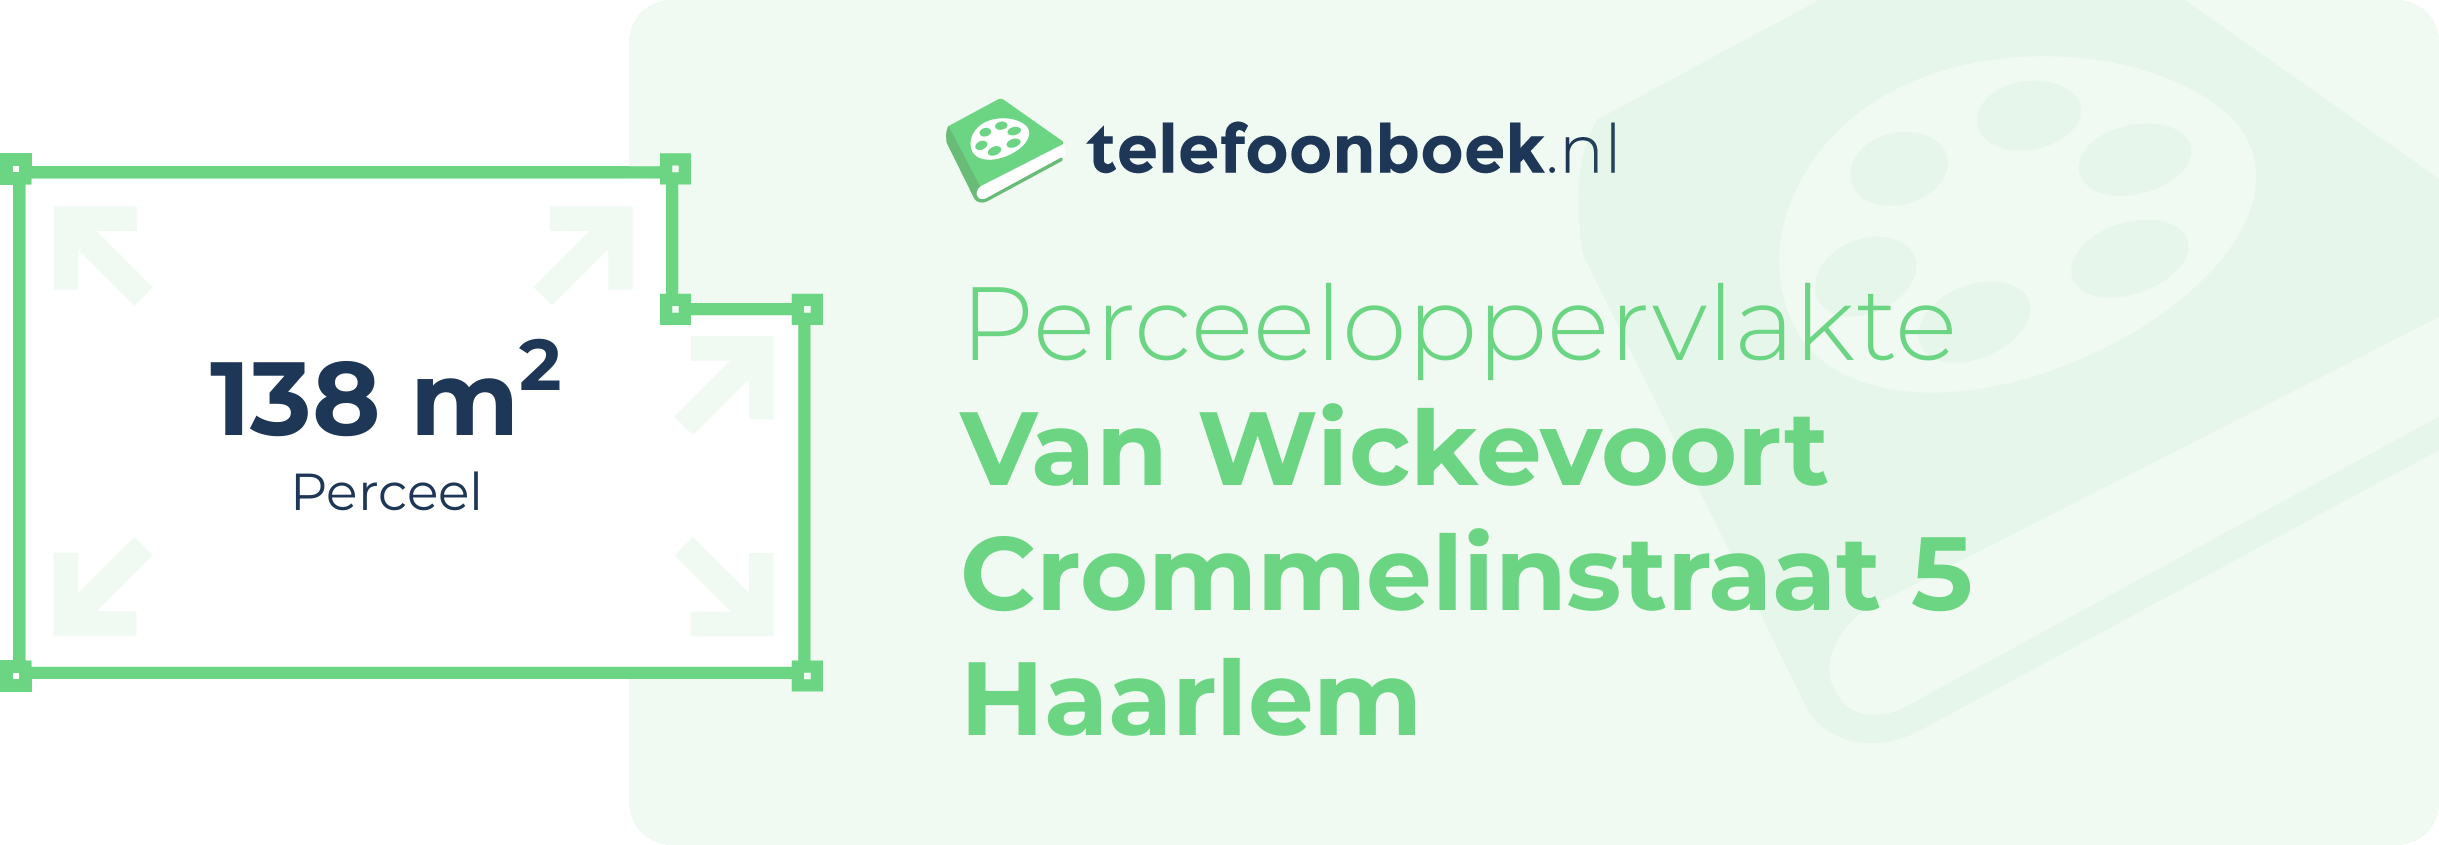 Perceeloppervlakte Van Wickevoort Crommelinstraat 5 Haarlem